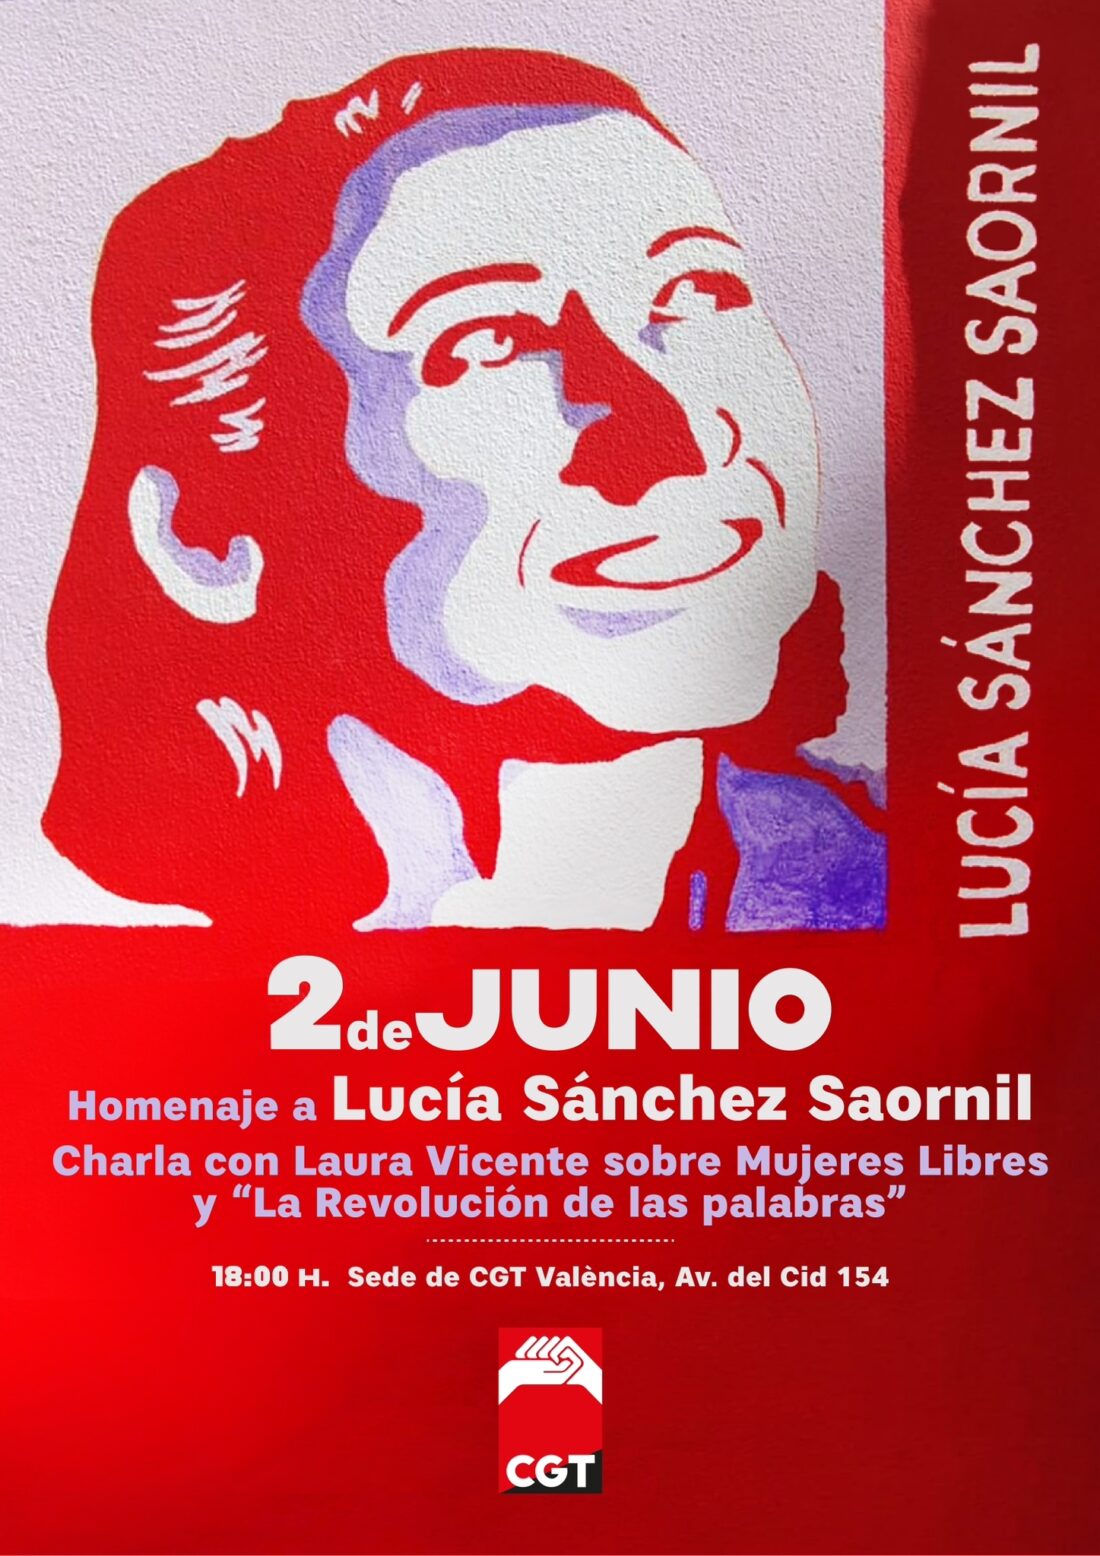 CGT vuelve a rendir homenaje a Lucía Sánchez Saornil y la Revolución de las palabras